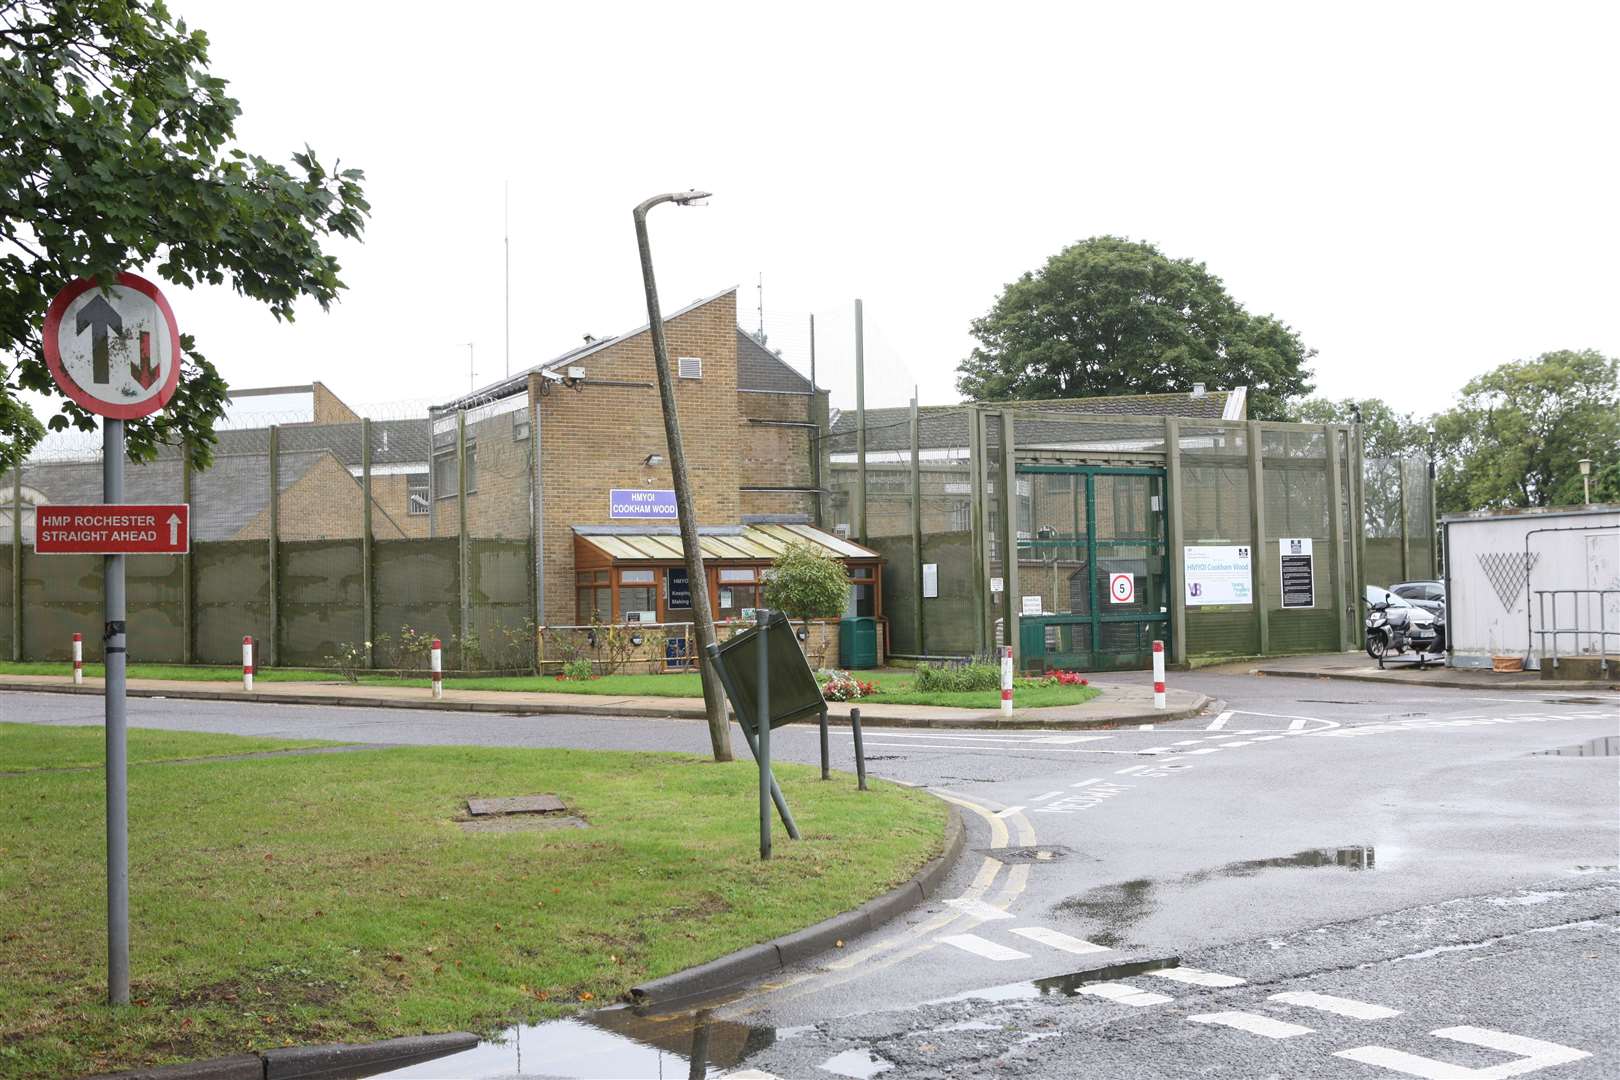 HM Prison Cookham Wood